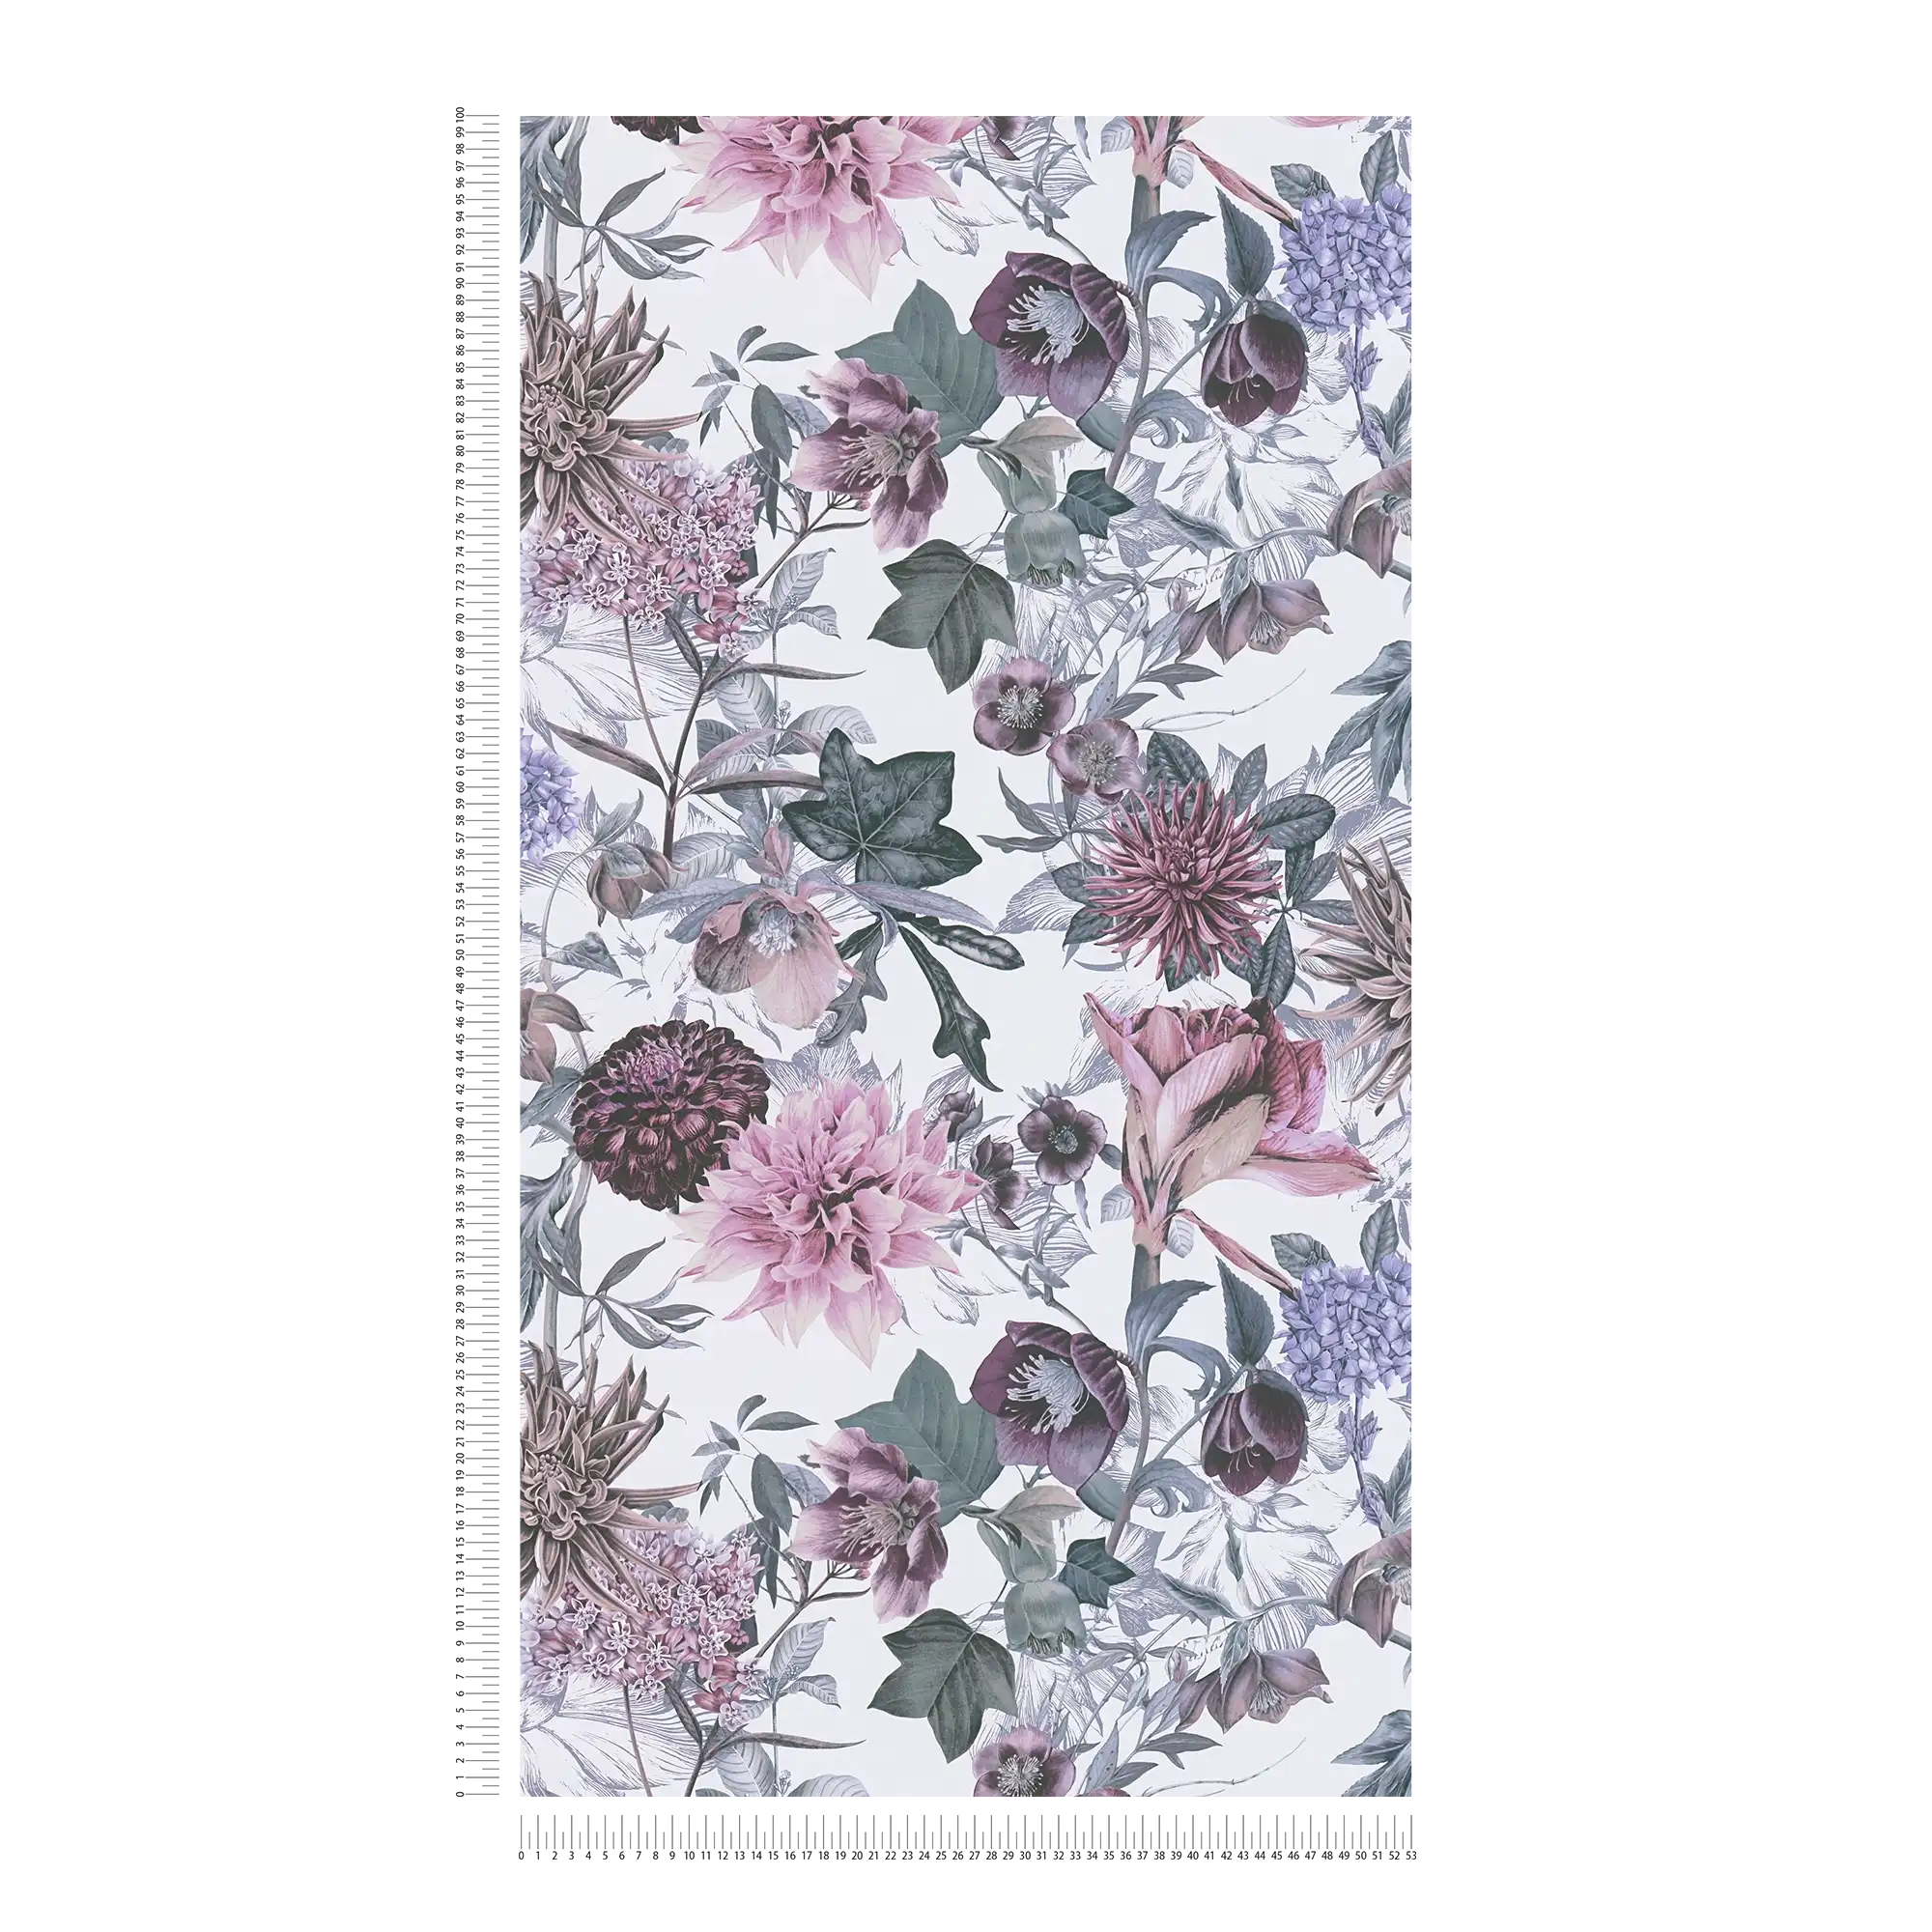             Bloemenbehang bloemmotief met bladeren - roze, grijs
        